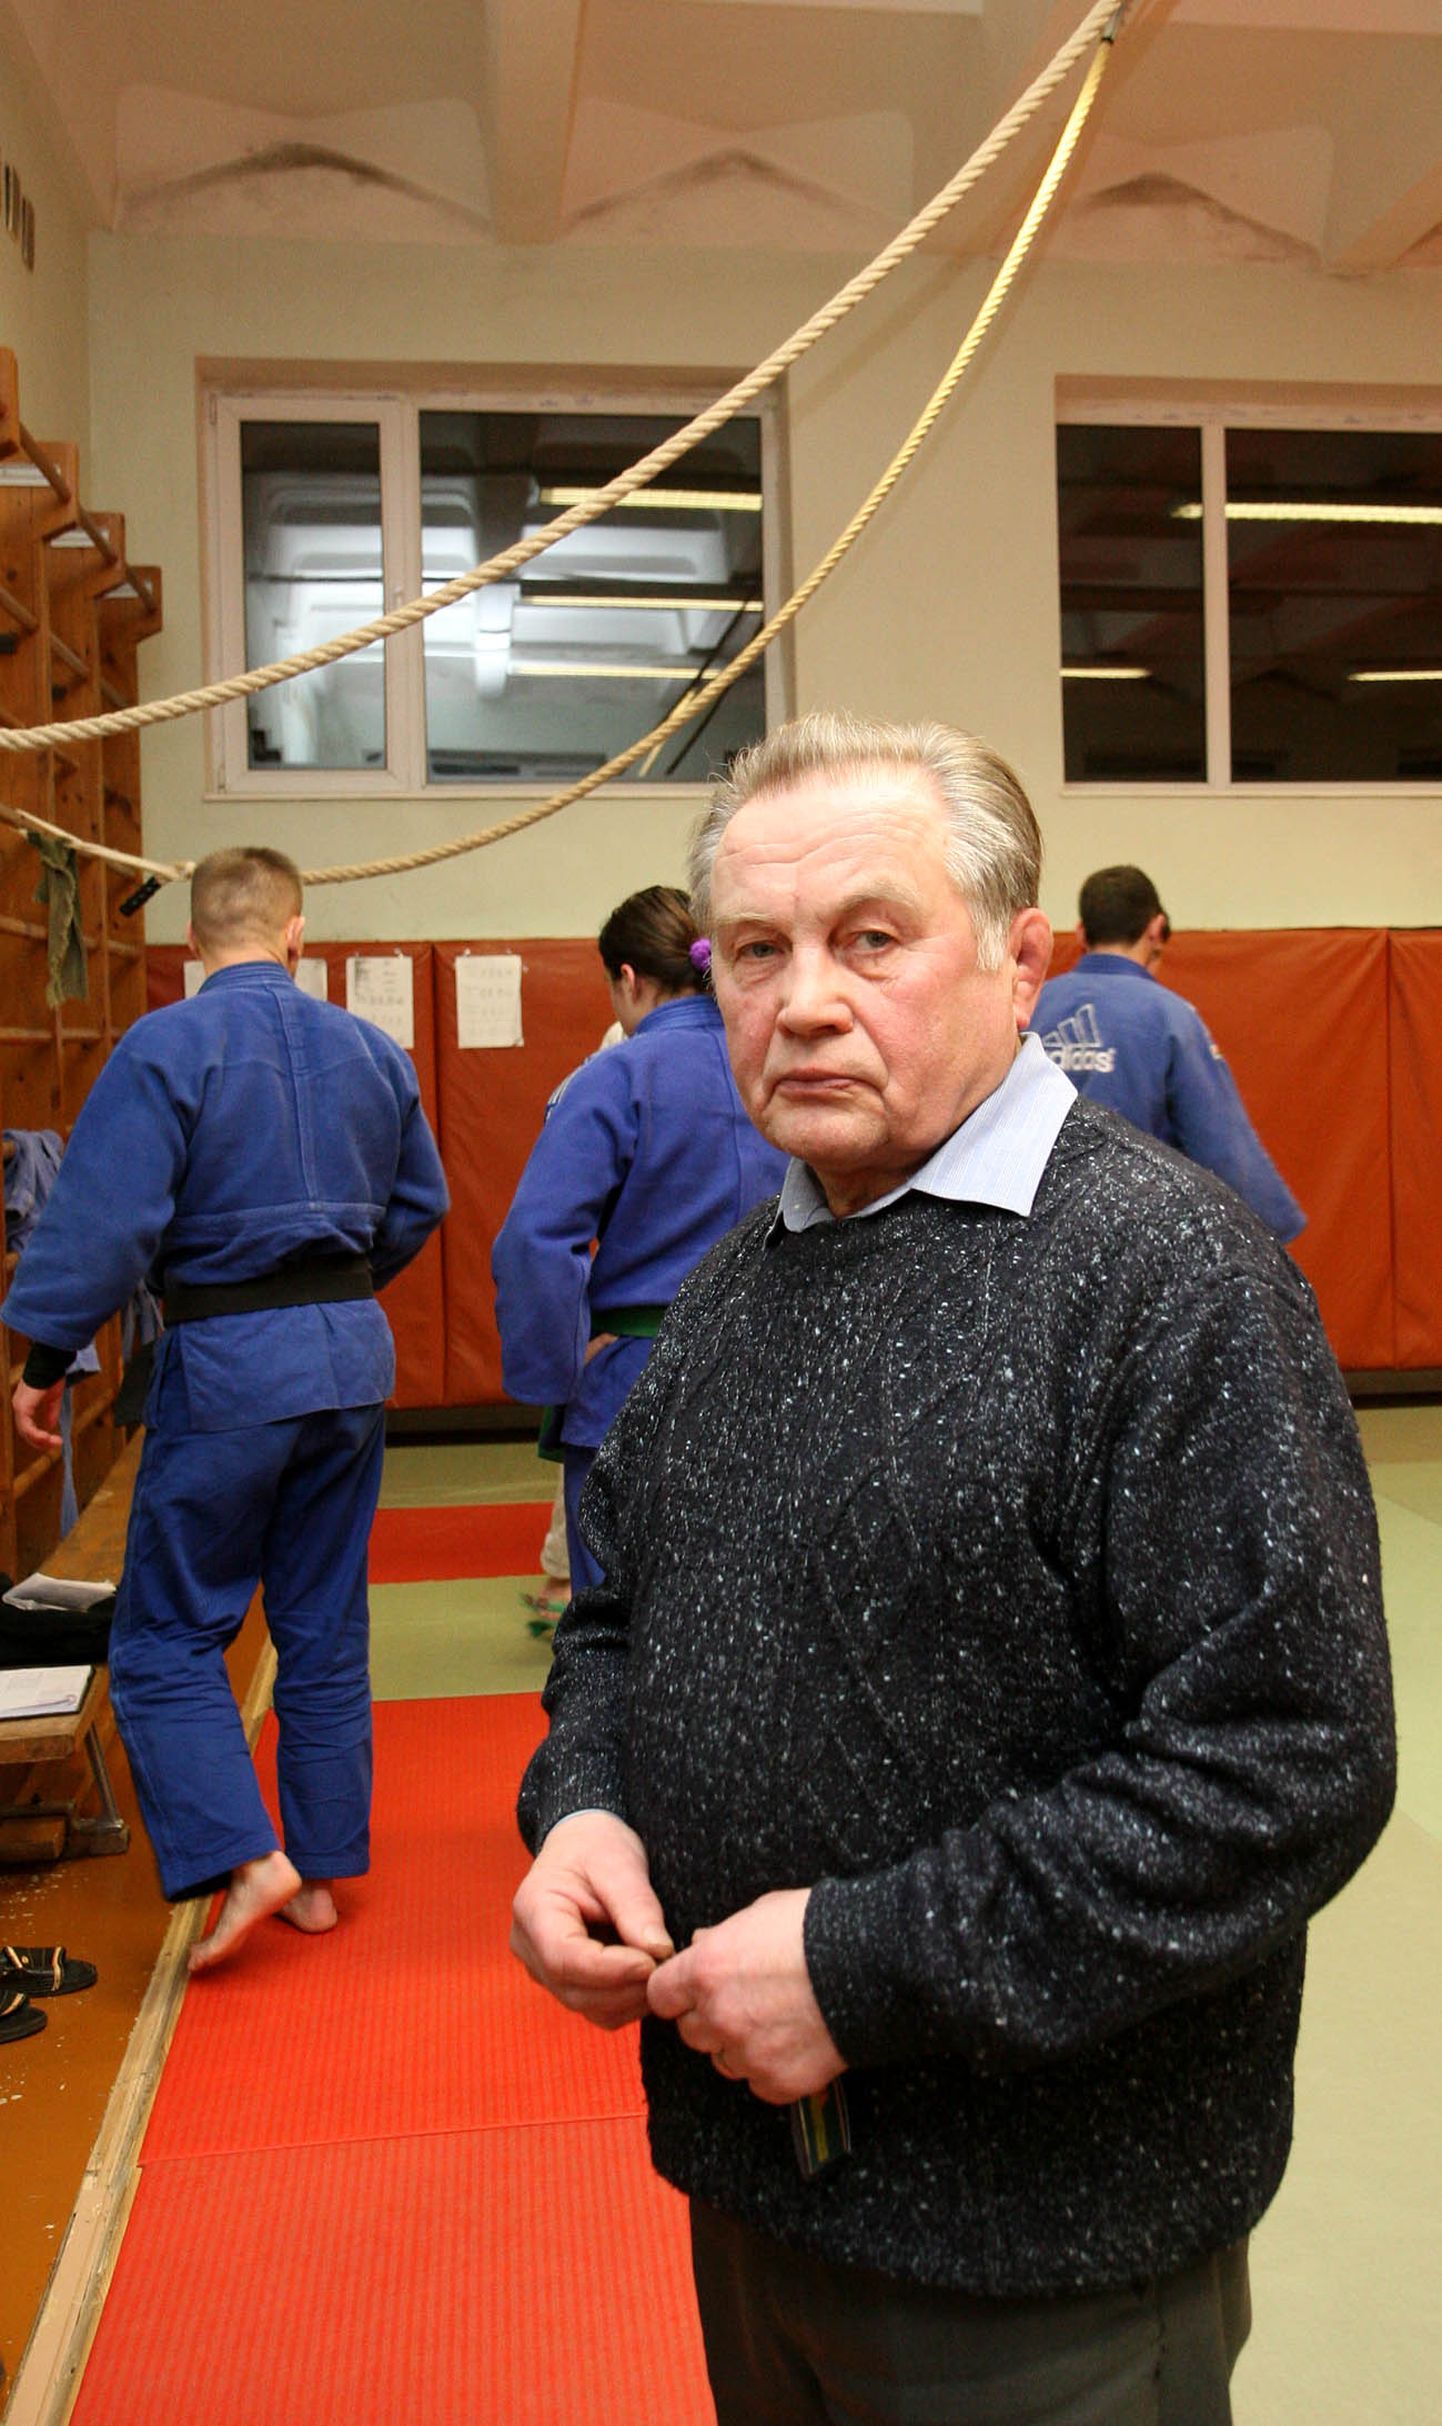 Ильмар Талусте приступил к работе завучем Кохтла-Ярвеской спортшколы в 1965 году и с тех пор более полувека является одним из наиболее выдающихся организаторов спортивной жизни Ида-Вирумаа.